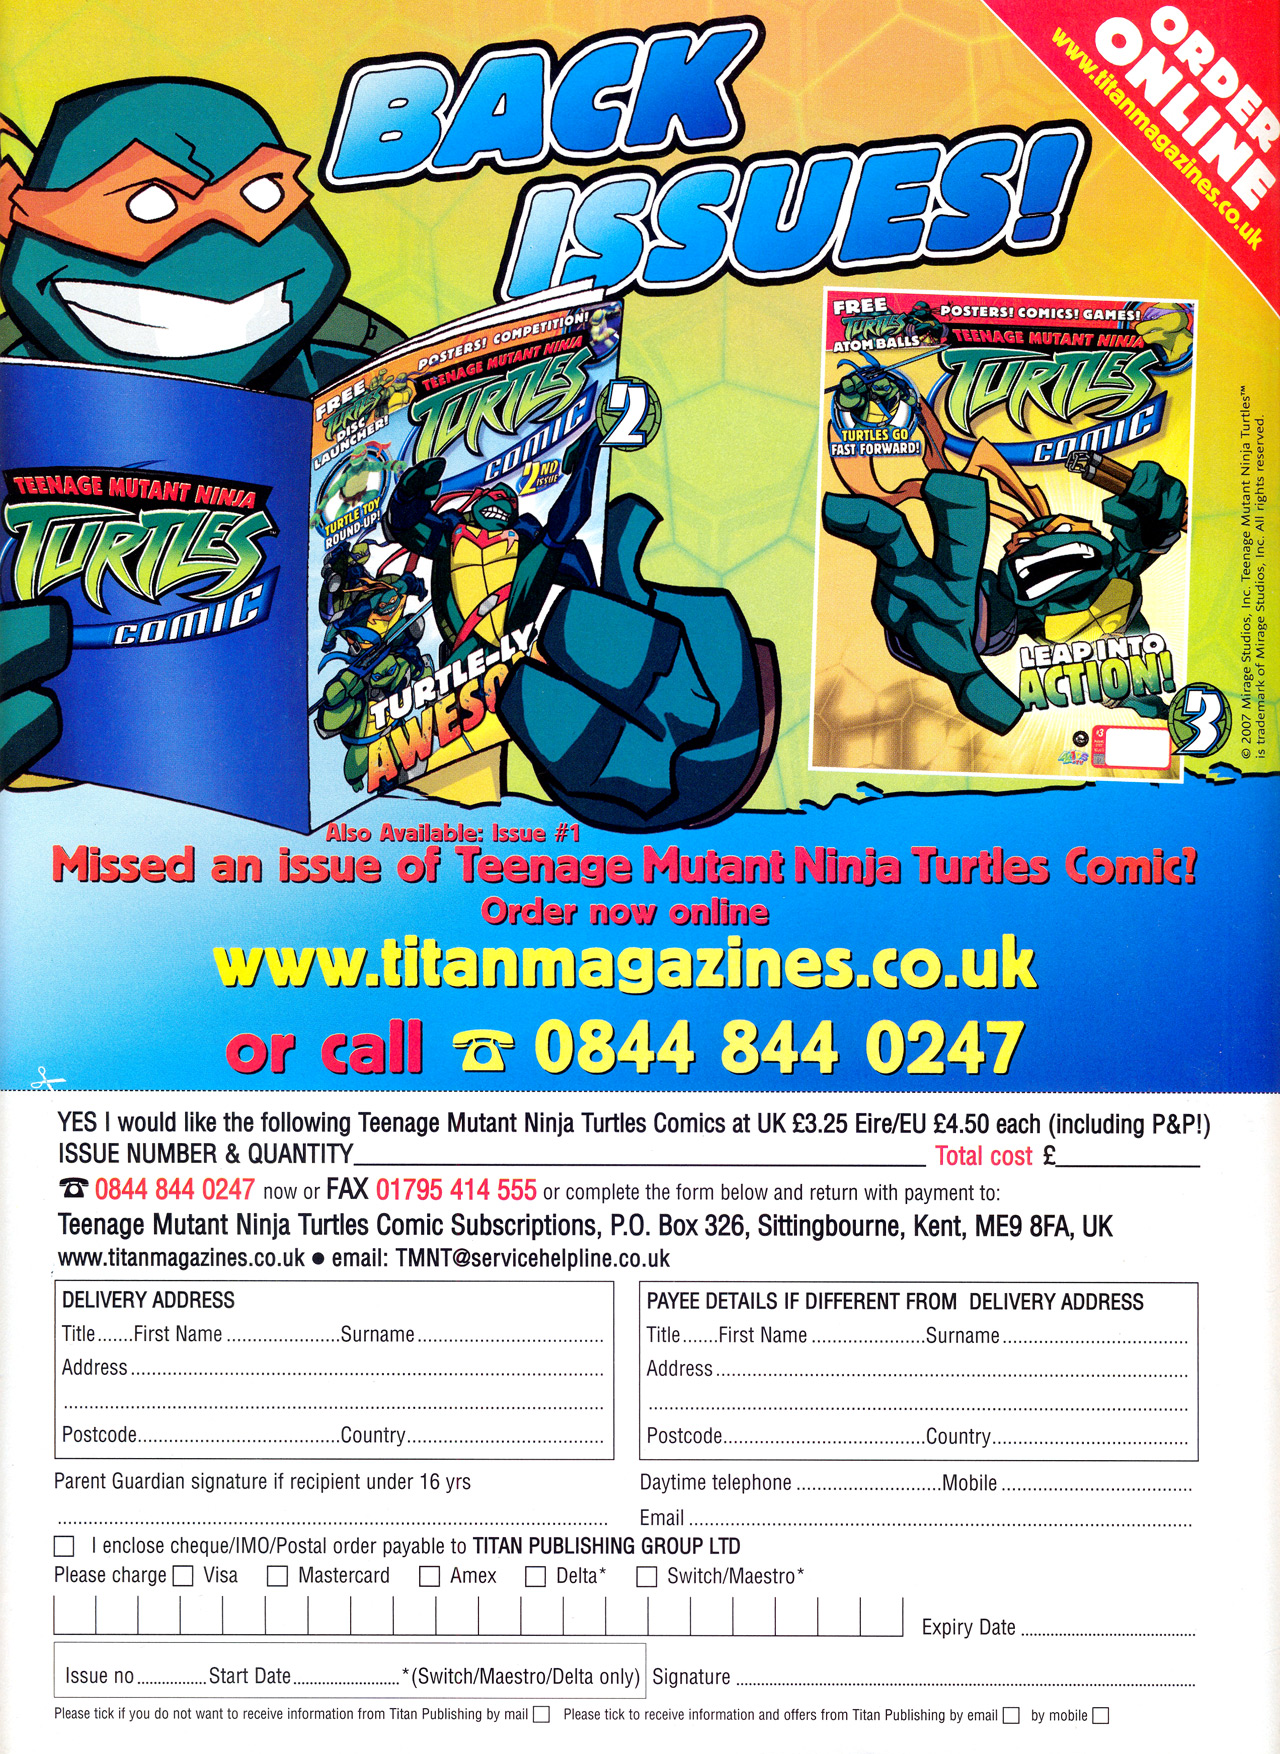 Read online Teenage Mutant Ninja Turtles Comic comic -  Issue #4 - 39